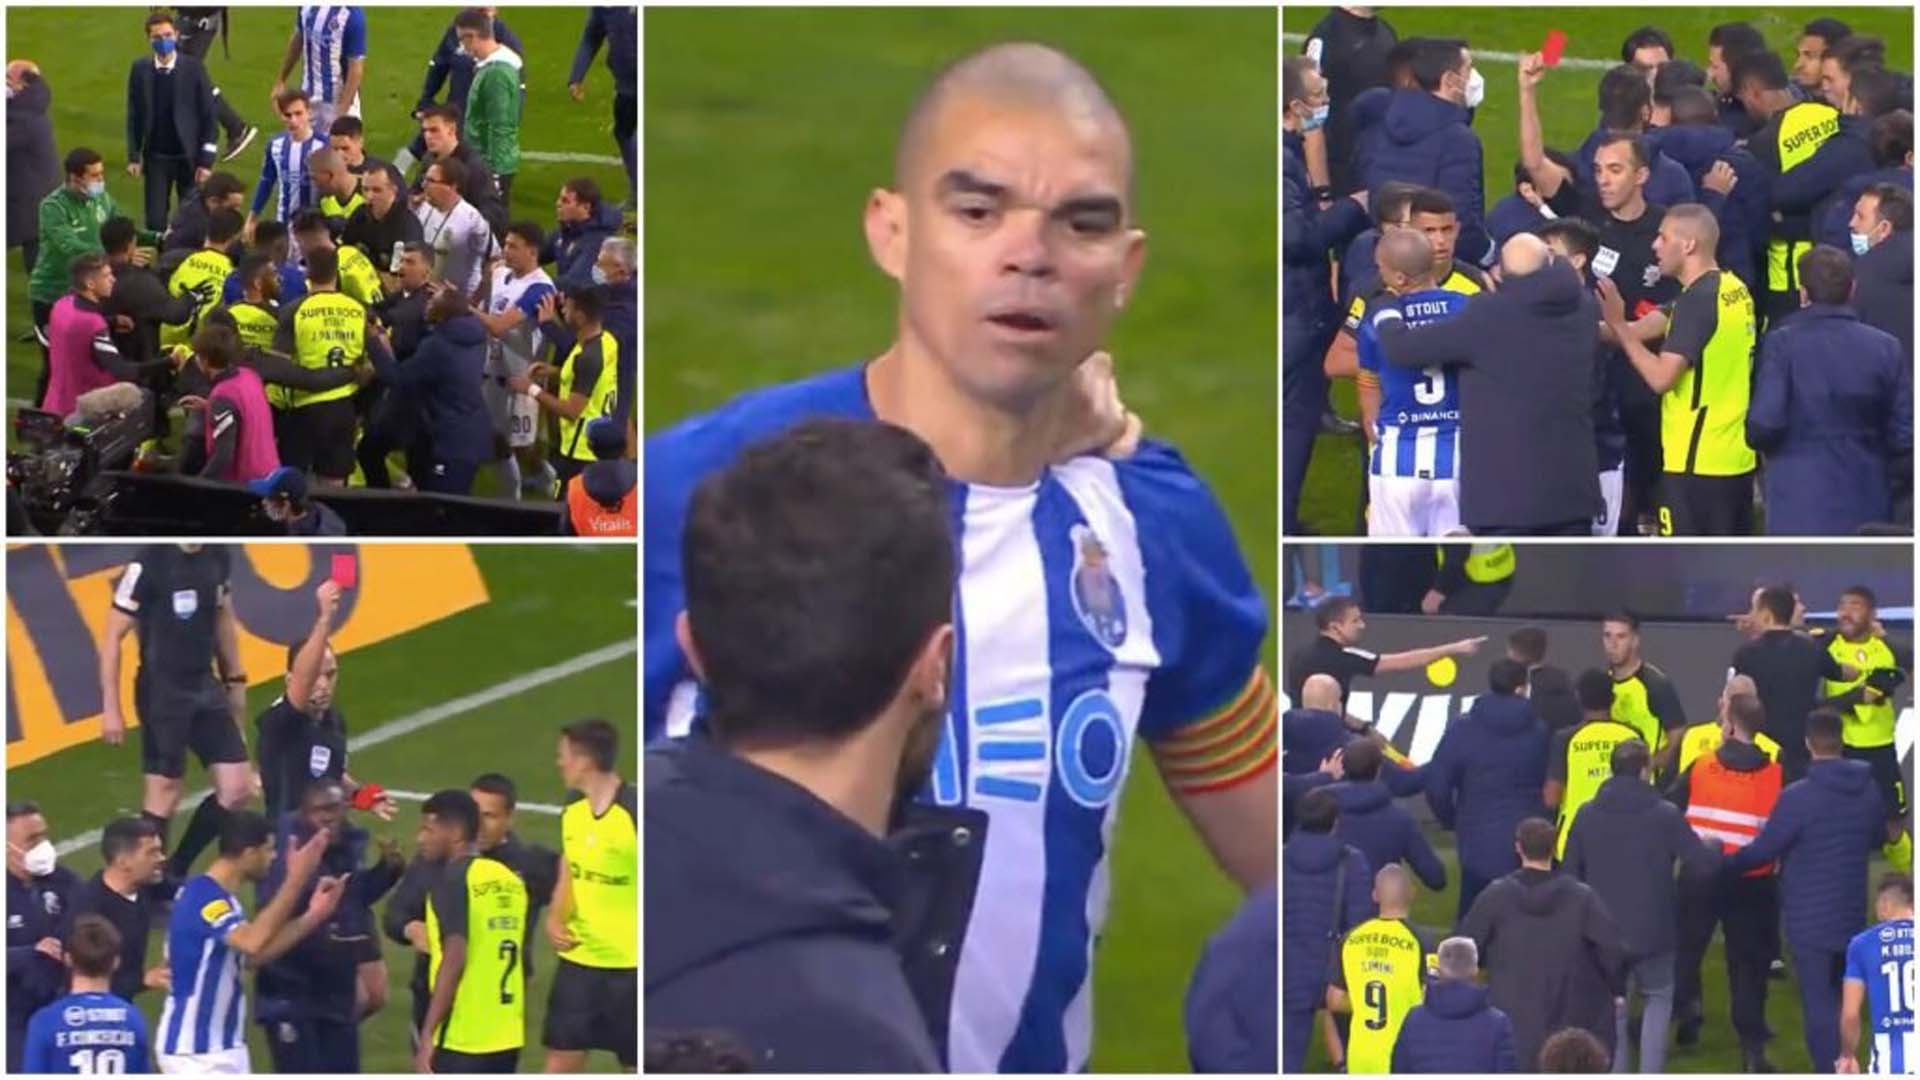 Porto - Sporting Lizbon maçında saha karıştı! Futbolcular birbirine girdi, 4 kırmızı kart çıktı 